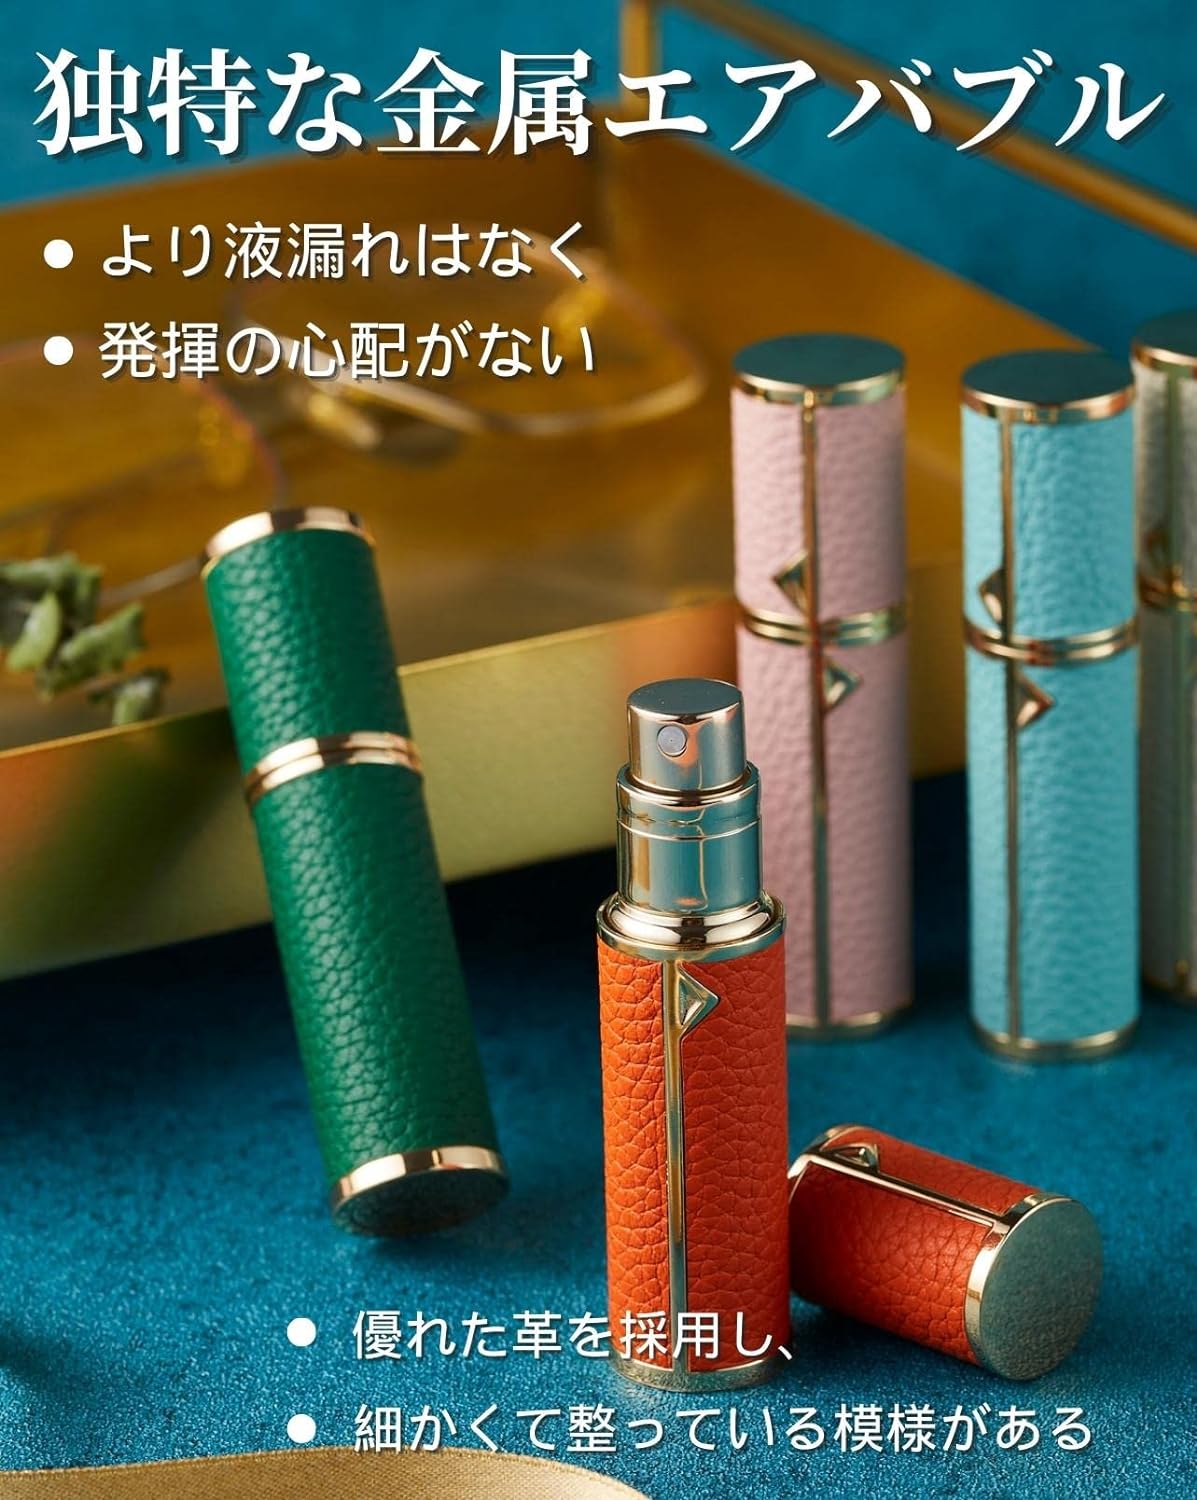 アトマイザー 香水アトマイザー 詰め替え 香水噴霧器 2-2.5mm径 5ml PUレザー レディース メンズ (青)